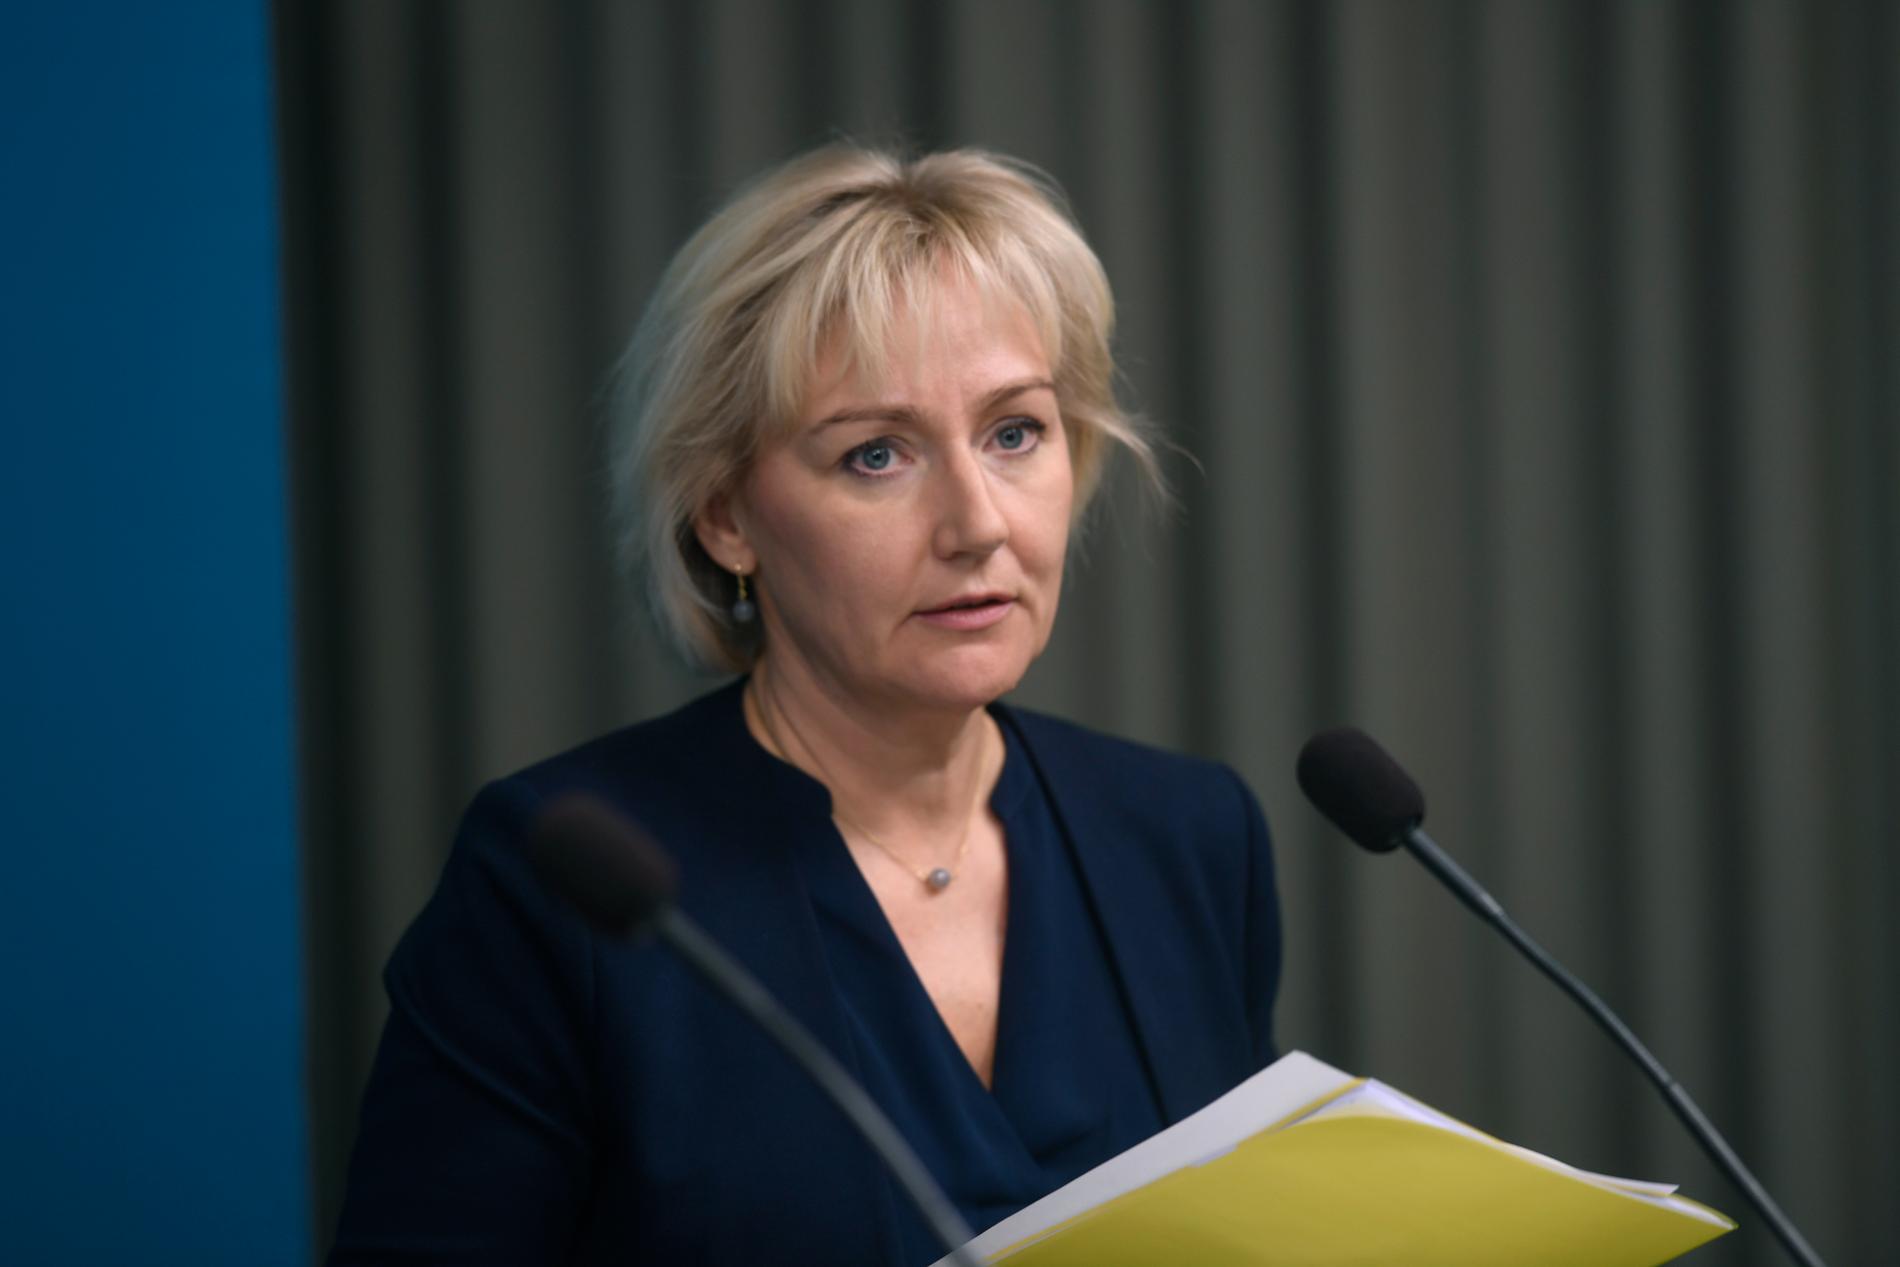 Helene Hellmark Knutsson (S), minister för högre utbildning och forskning.